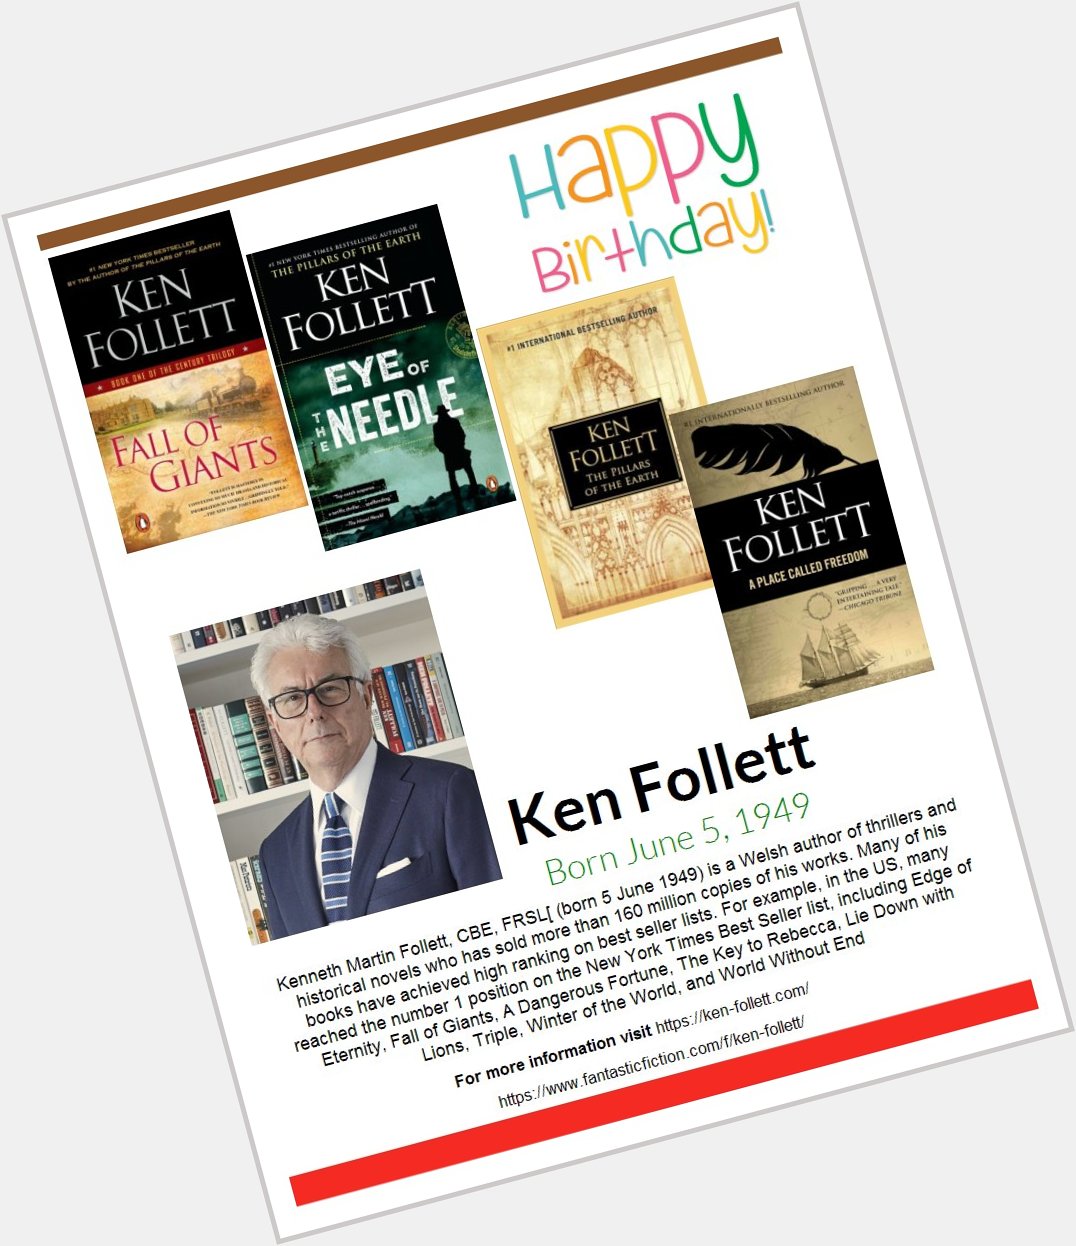 Happy Birthday Ken Follett!  